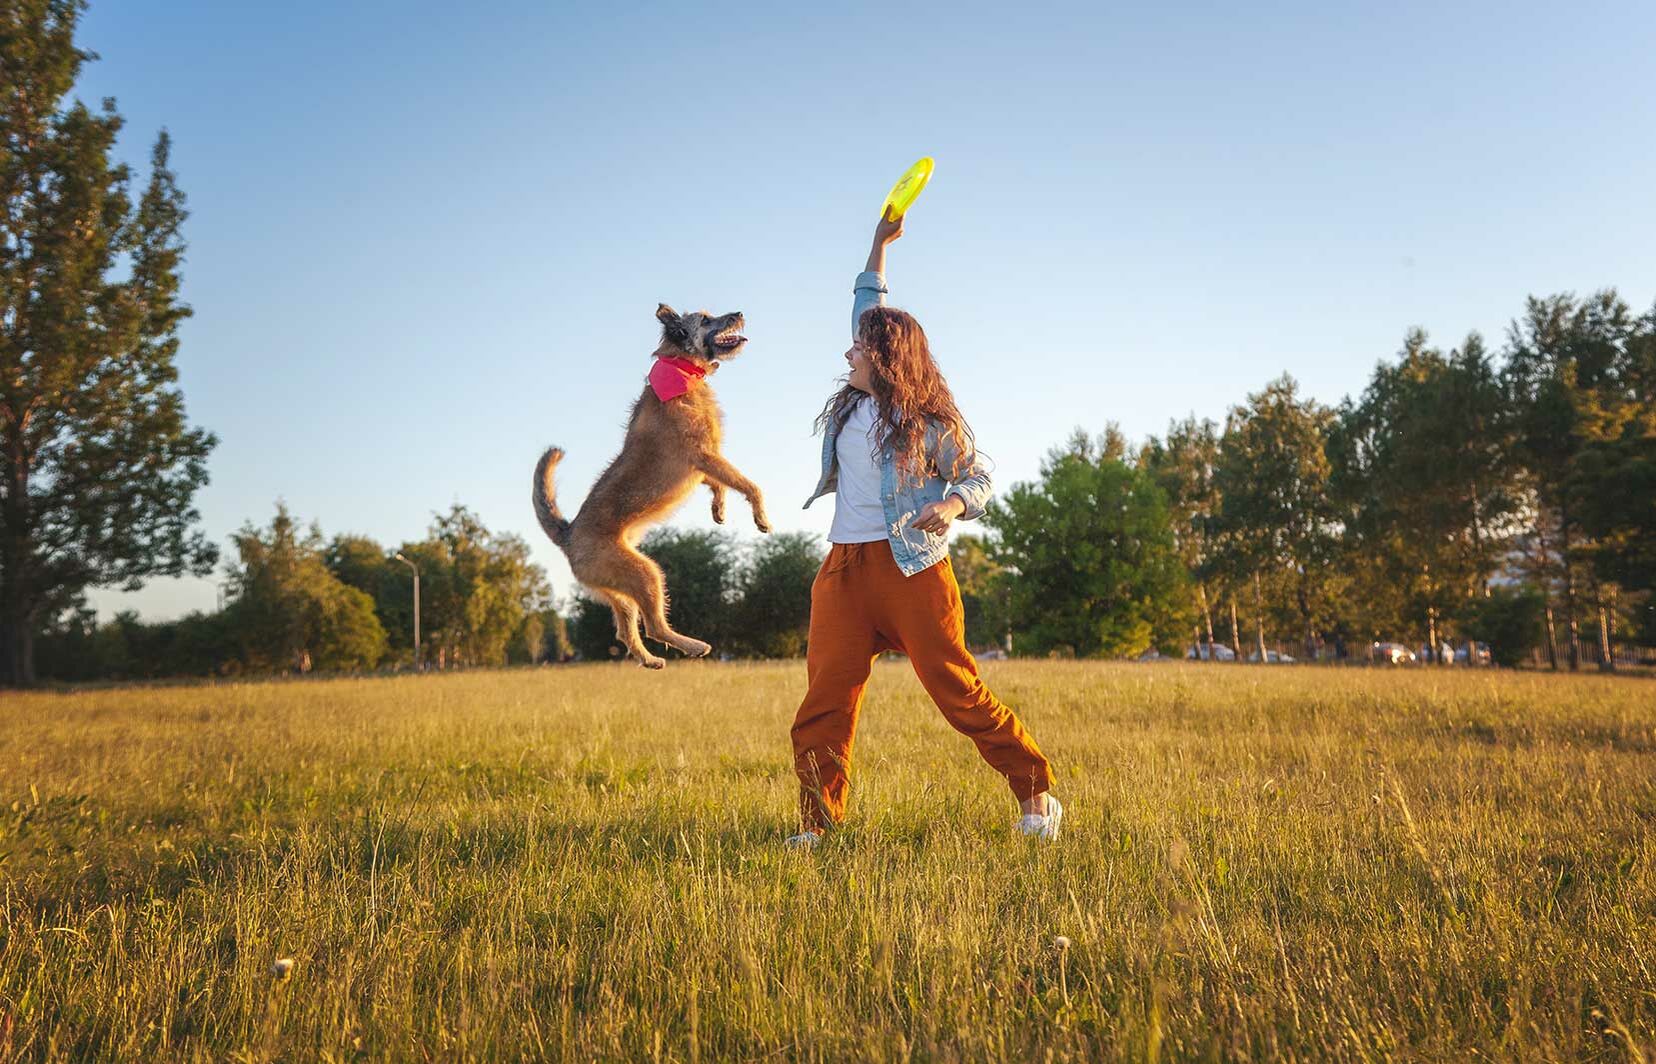  Eine junge Frau spielt im Park mit ihrem Hund Frisbee.